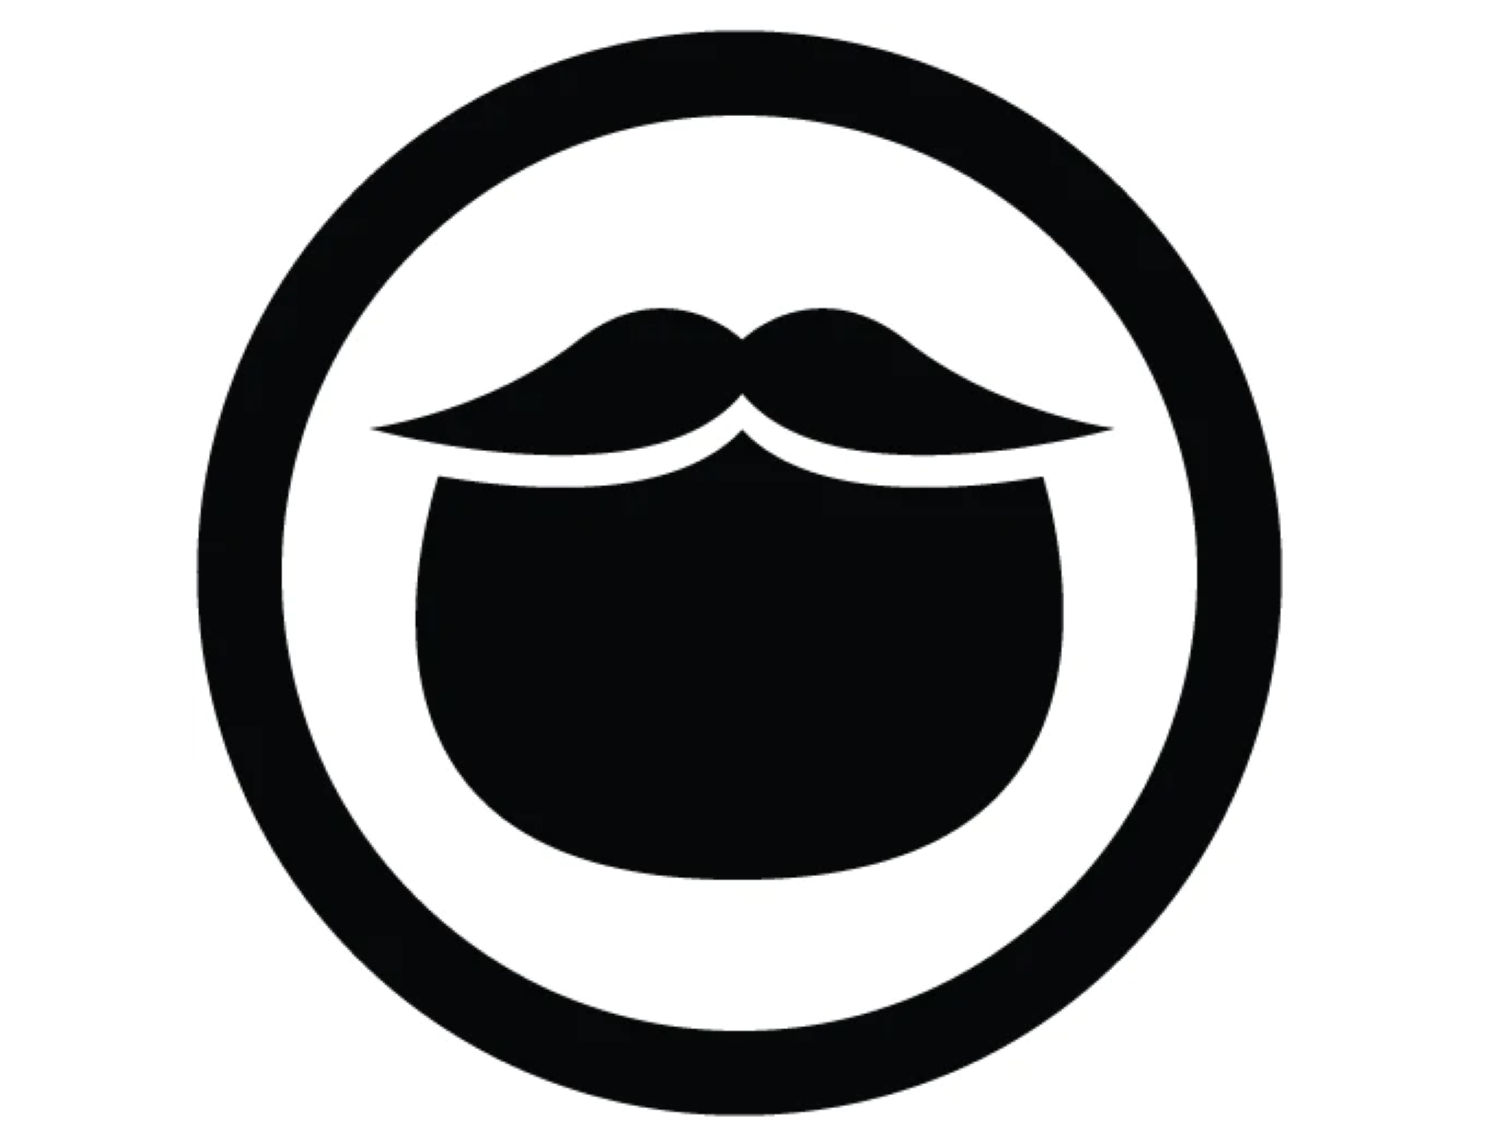 Zu sehen ist das Logo der Marke Beardbrand.